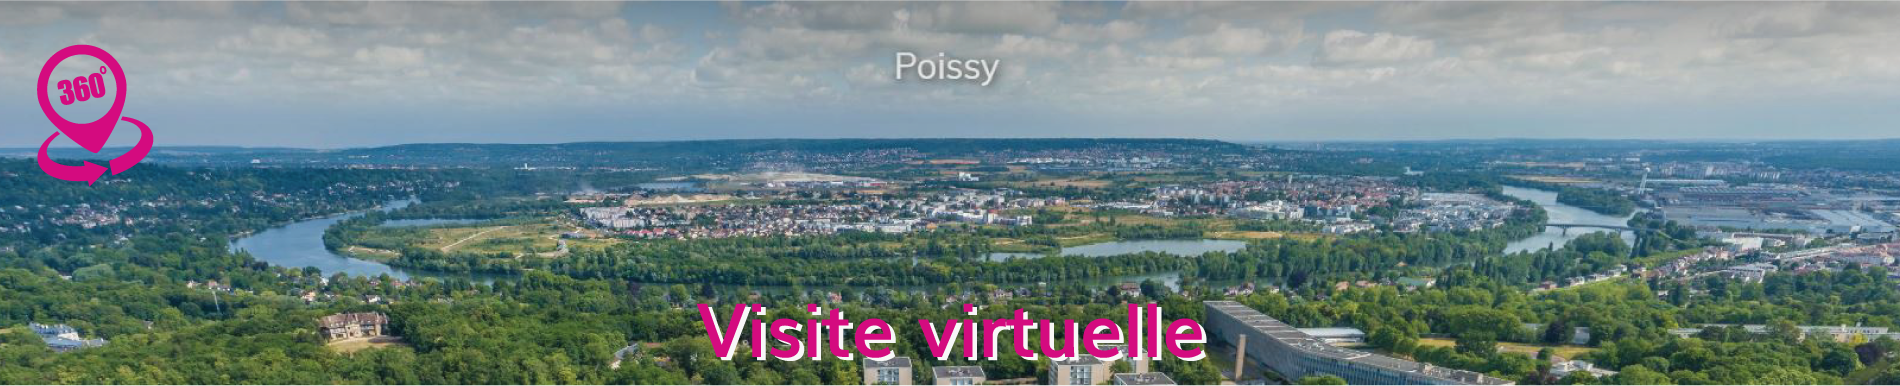 Visite virtuelle Poissy